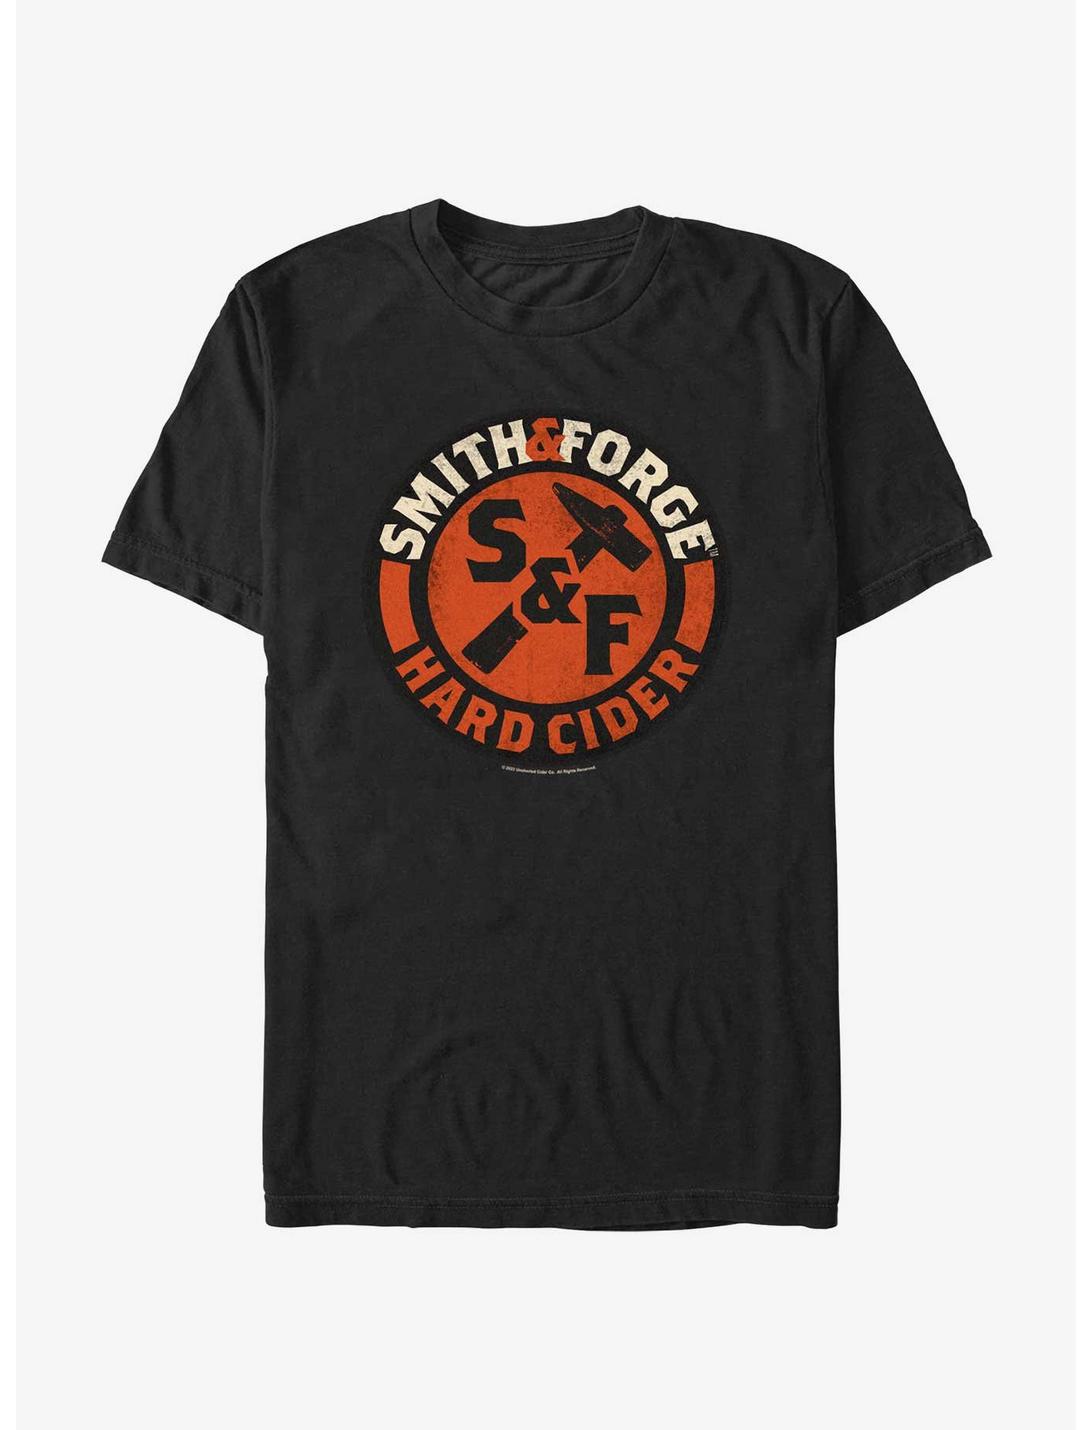 Smith And Forge Hard Cider Circular Logo T-Shirt, BLACK, hi-res